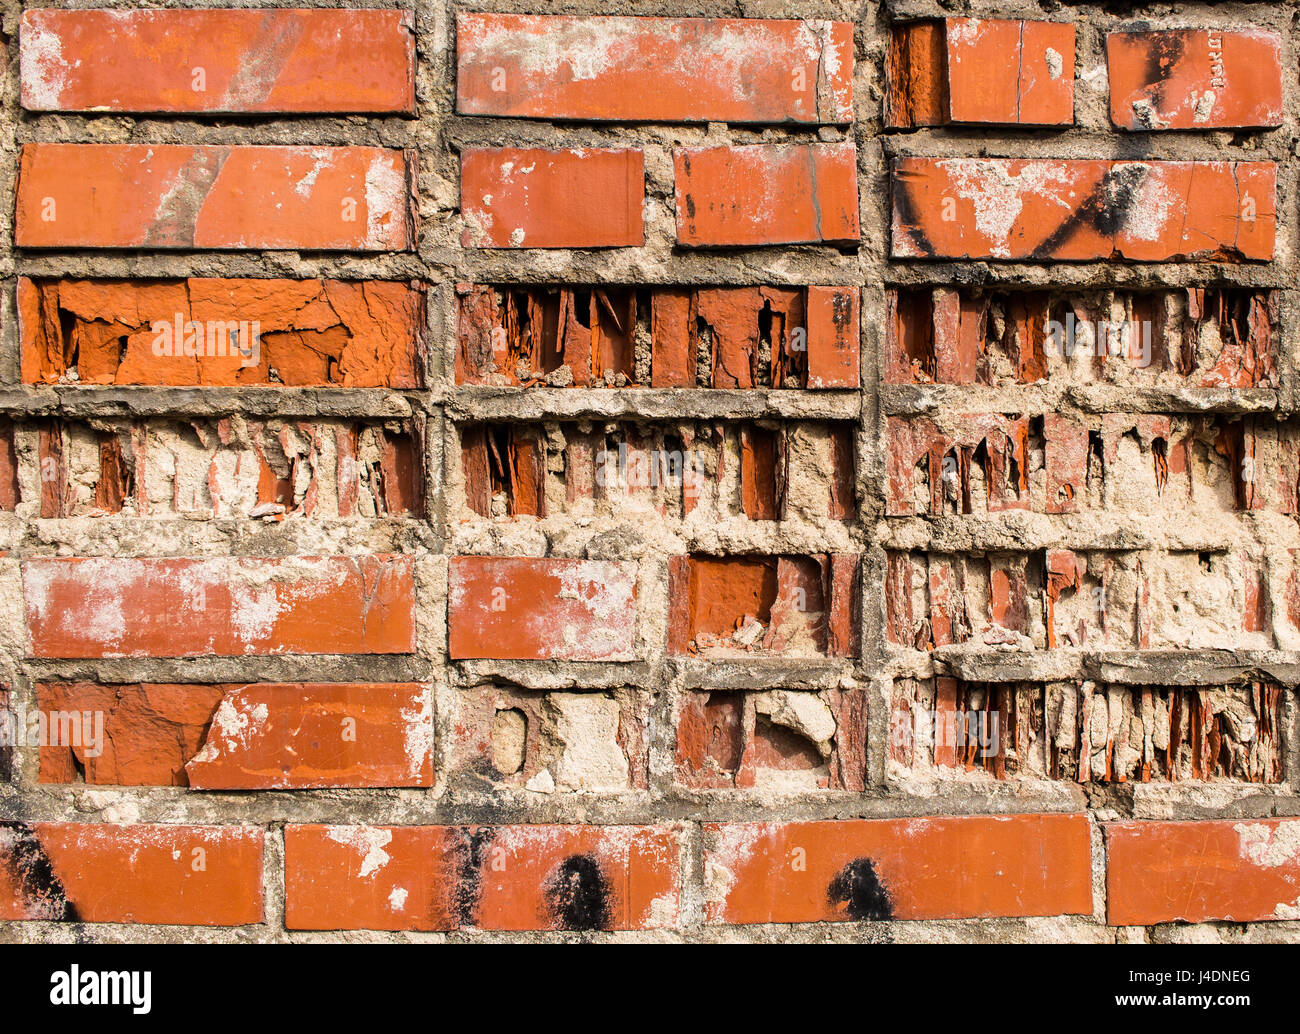 Un frammento di una parete da un vecchio rosso parzialmente distrutta in mattoni di argilla Foto Stock